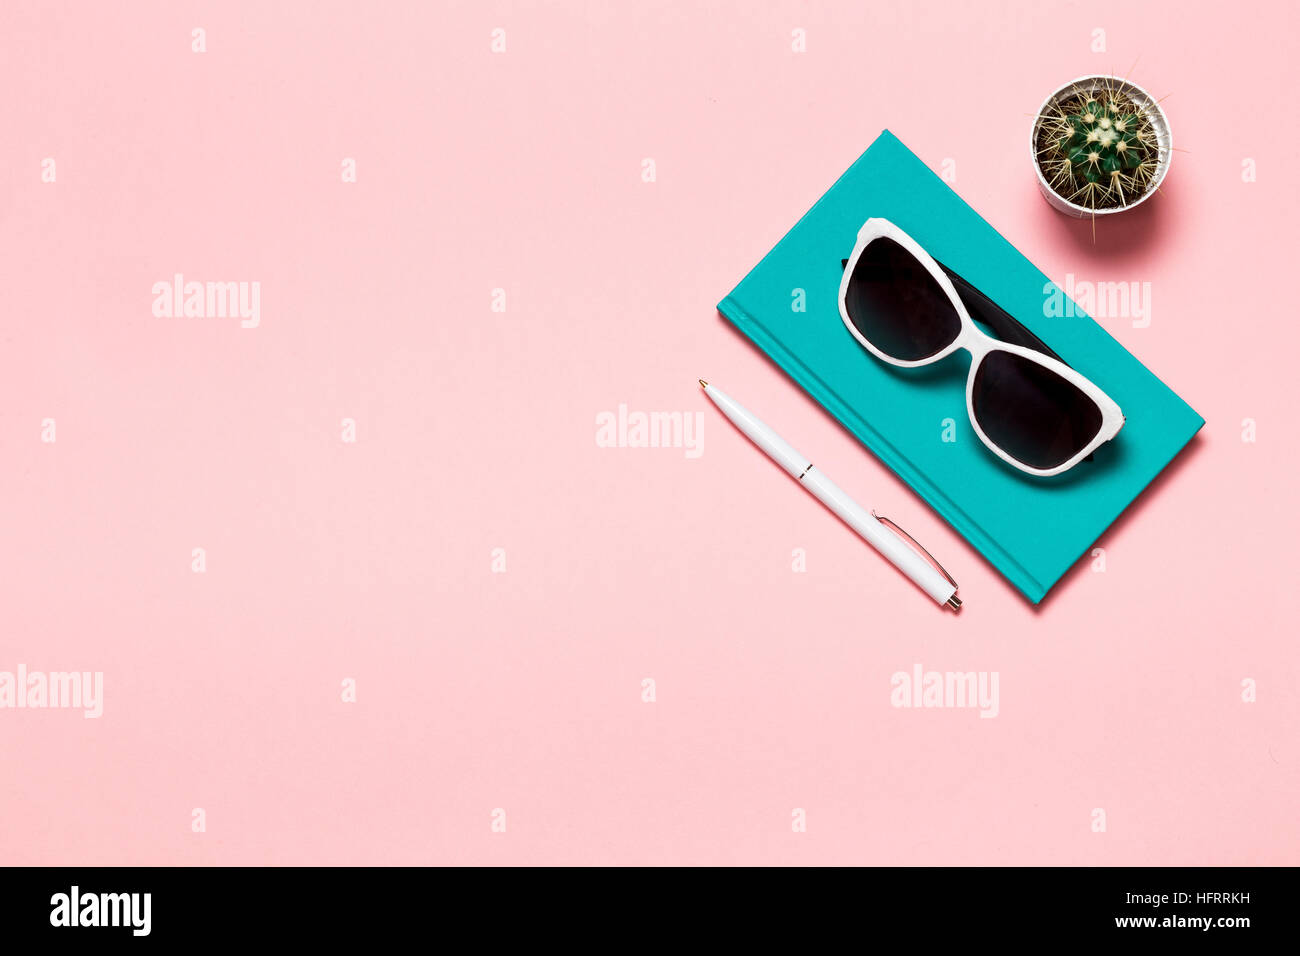 Kreative flach legen Foto des Arbeitsbereichs Schreibtisch mit Aquamarin Notebook, Brillen, Kaktus Kopie Raum rosa Hintergrund, minimalistischen Stil Stockfoto